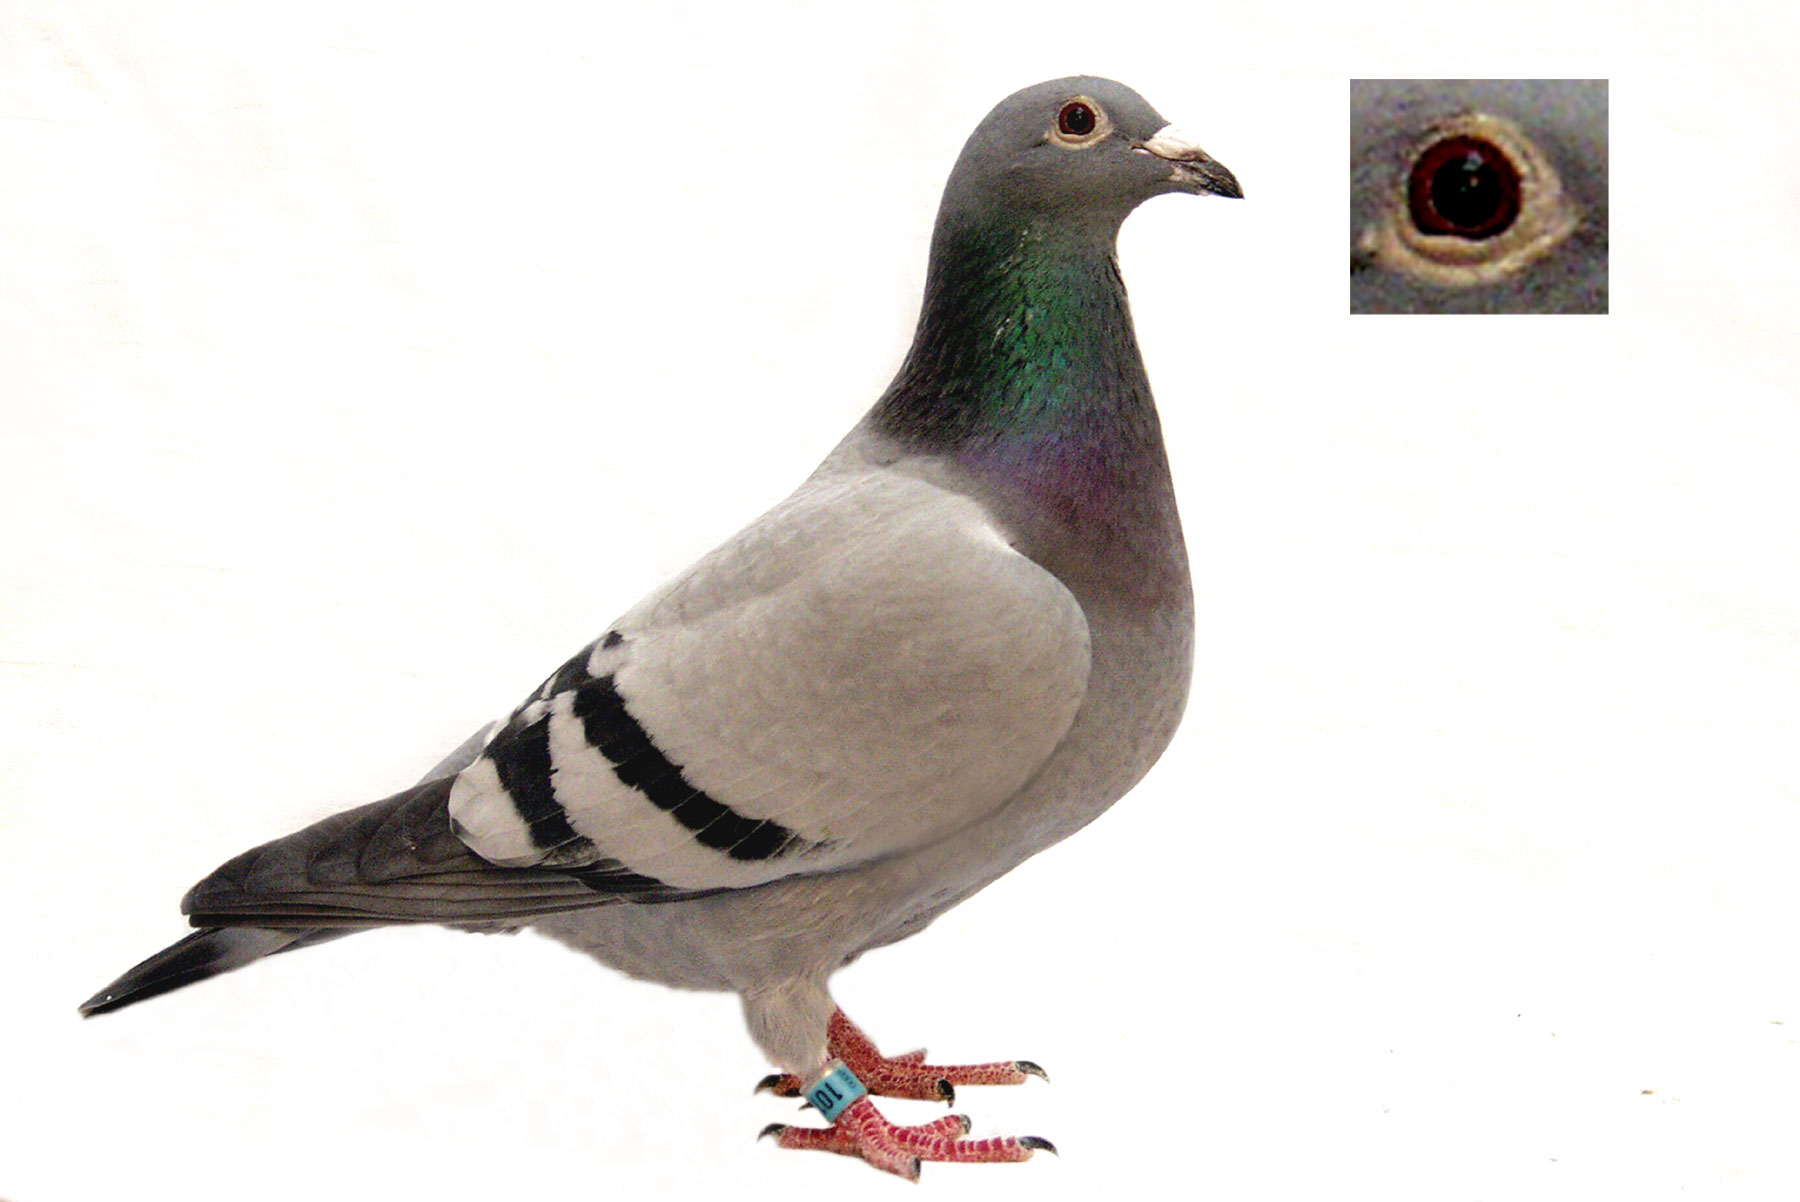 fond d'écran pigeon 1920x1080,oiseau,colombe,pigeons et colombes,colombe